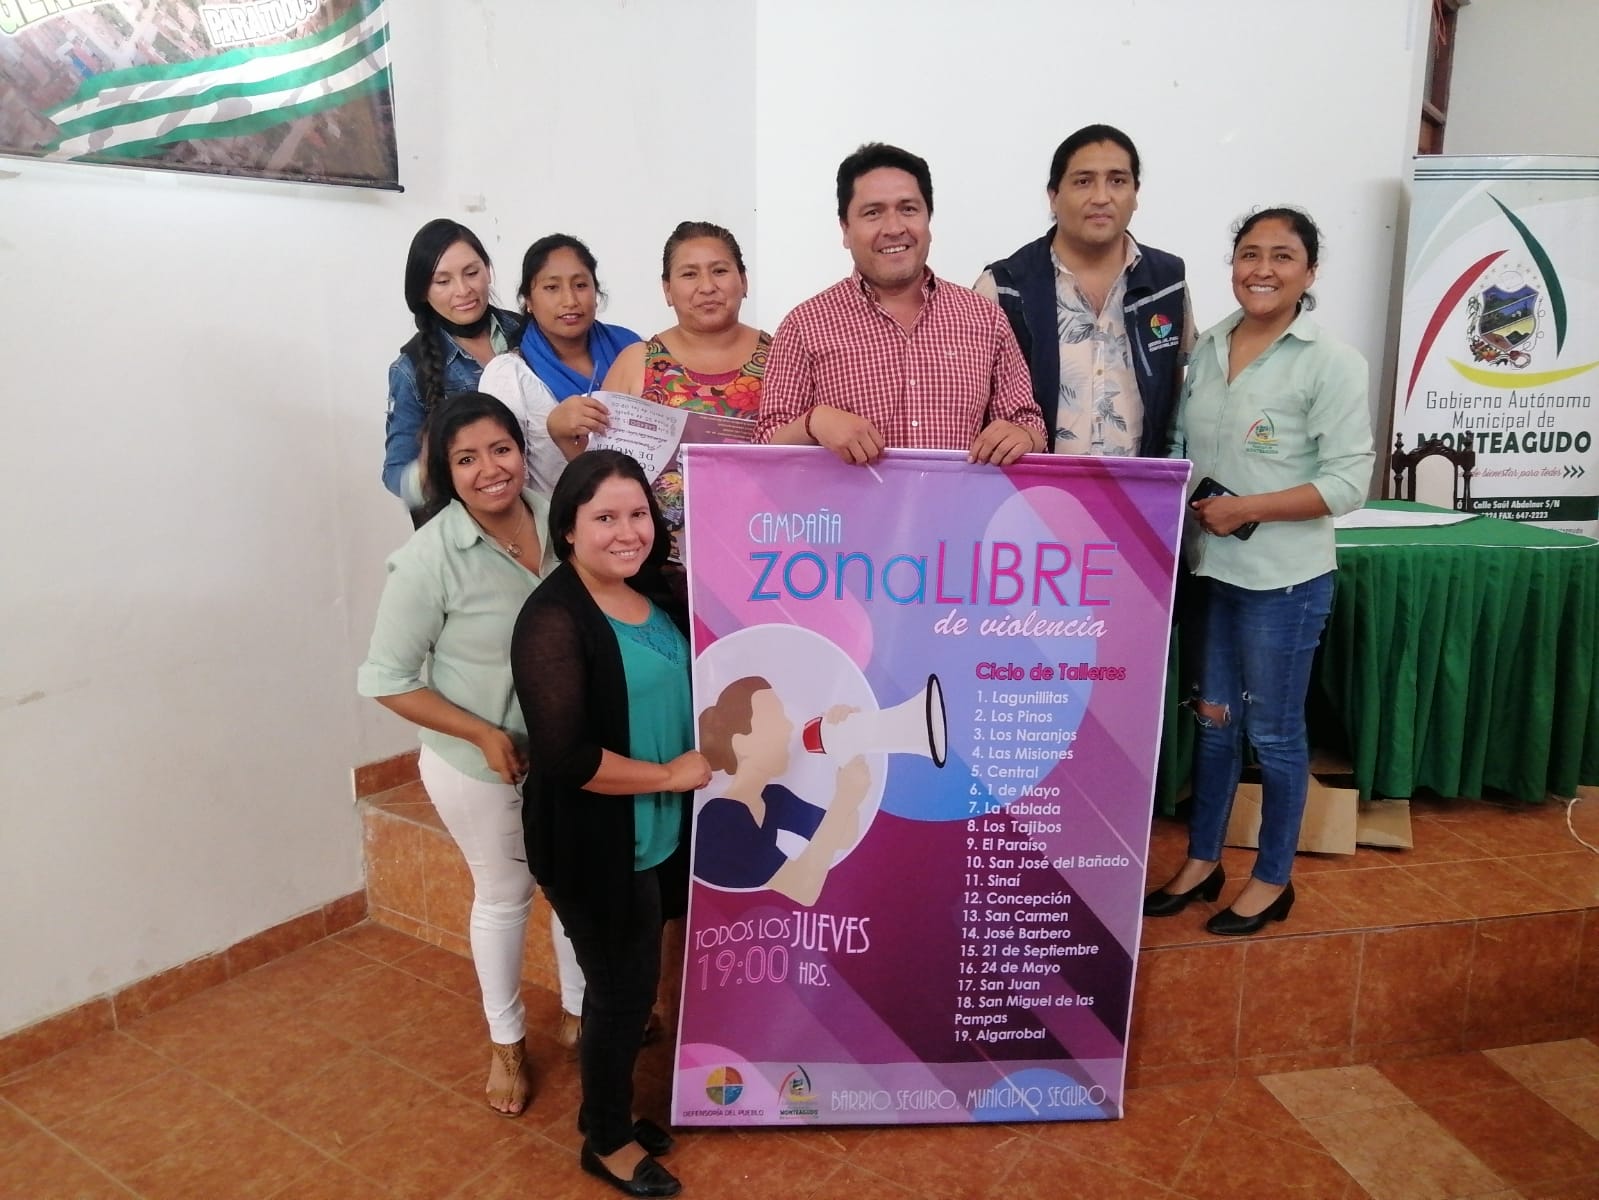 Defensoría del Pueblo y el municipio de Monteagudo lanzan la campaña de prevención de la violencia "Zona Libre de violencia, barrio seguro, municipio seguro"